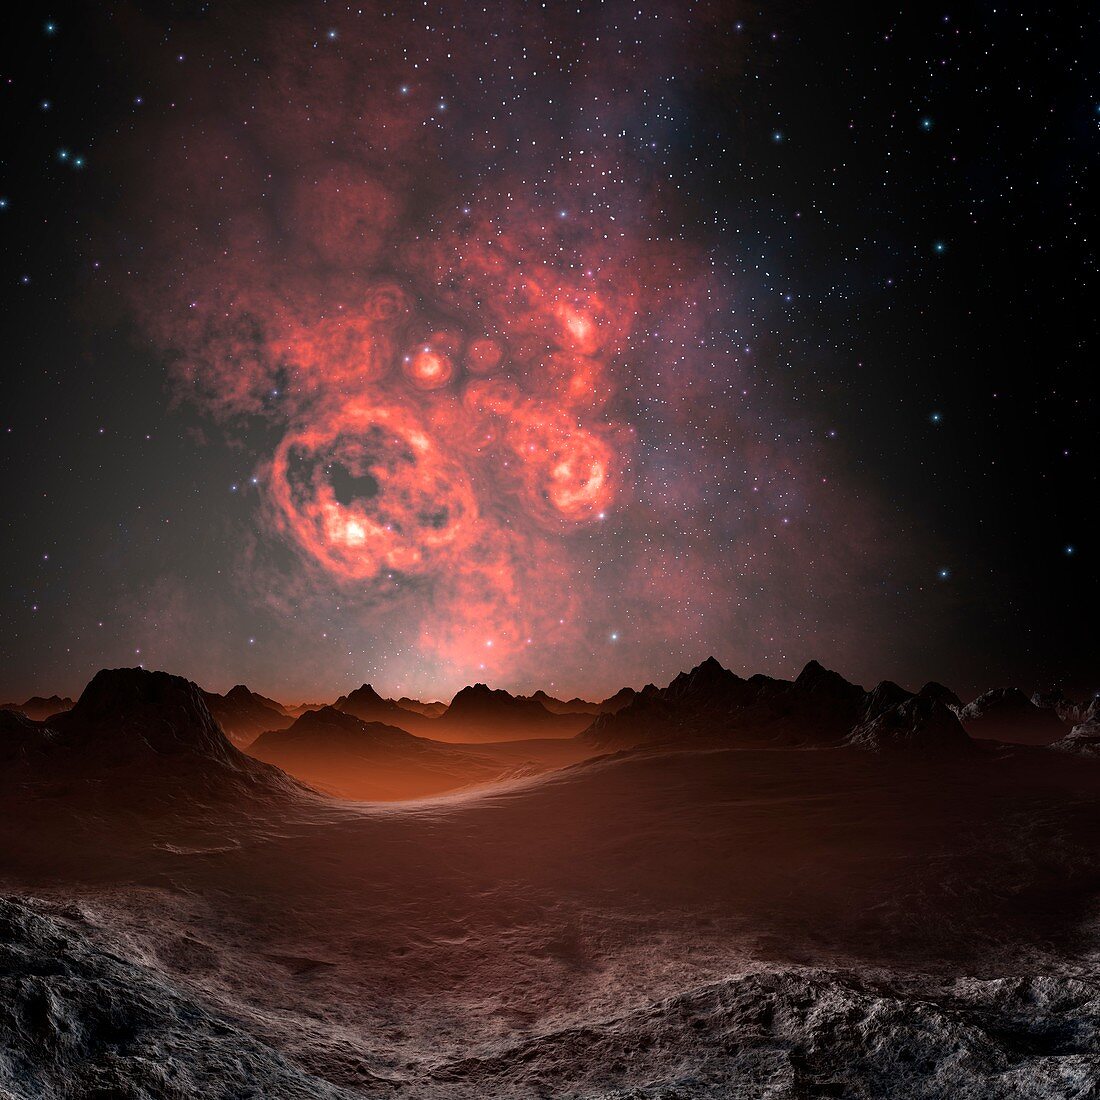 Nebula seen from an alien planet,artwork